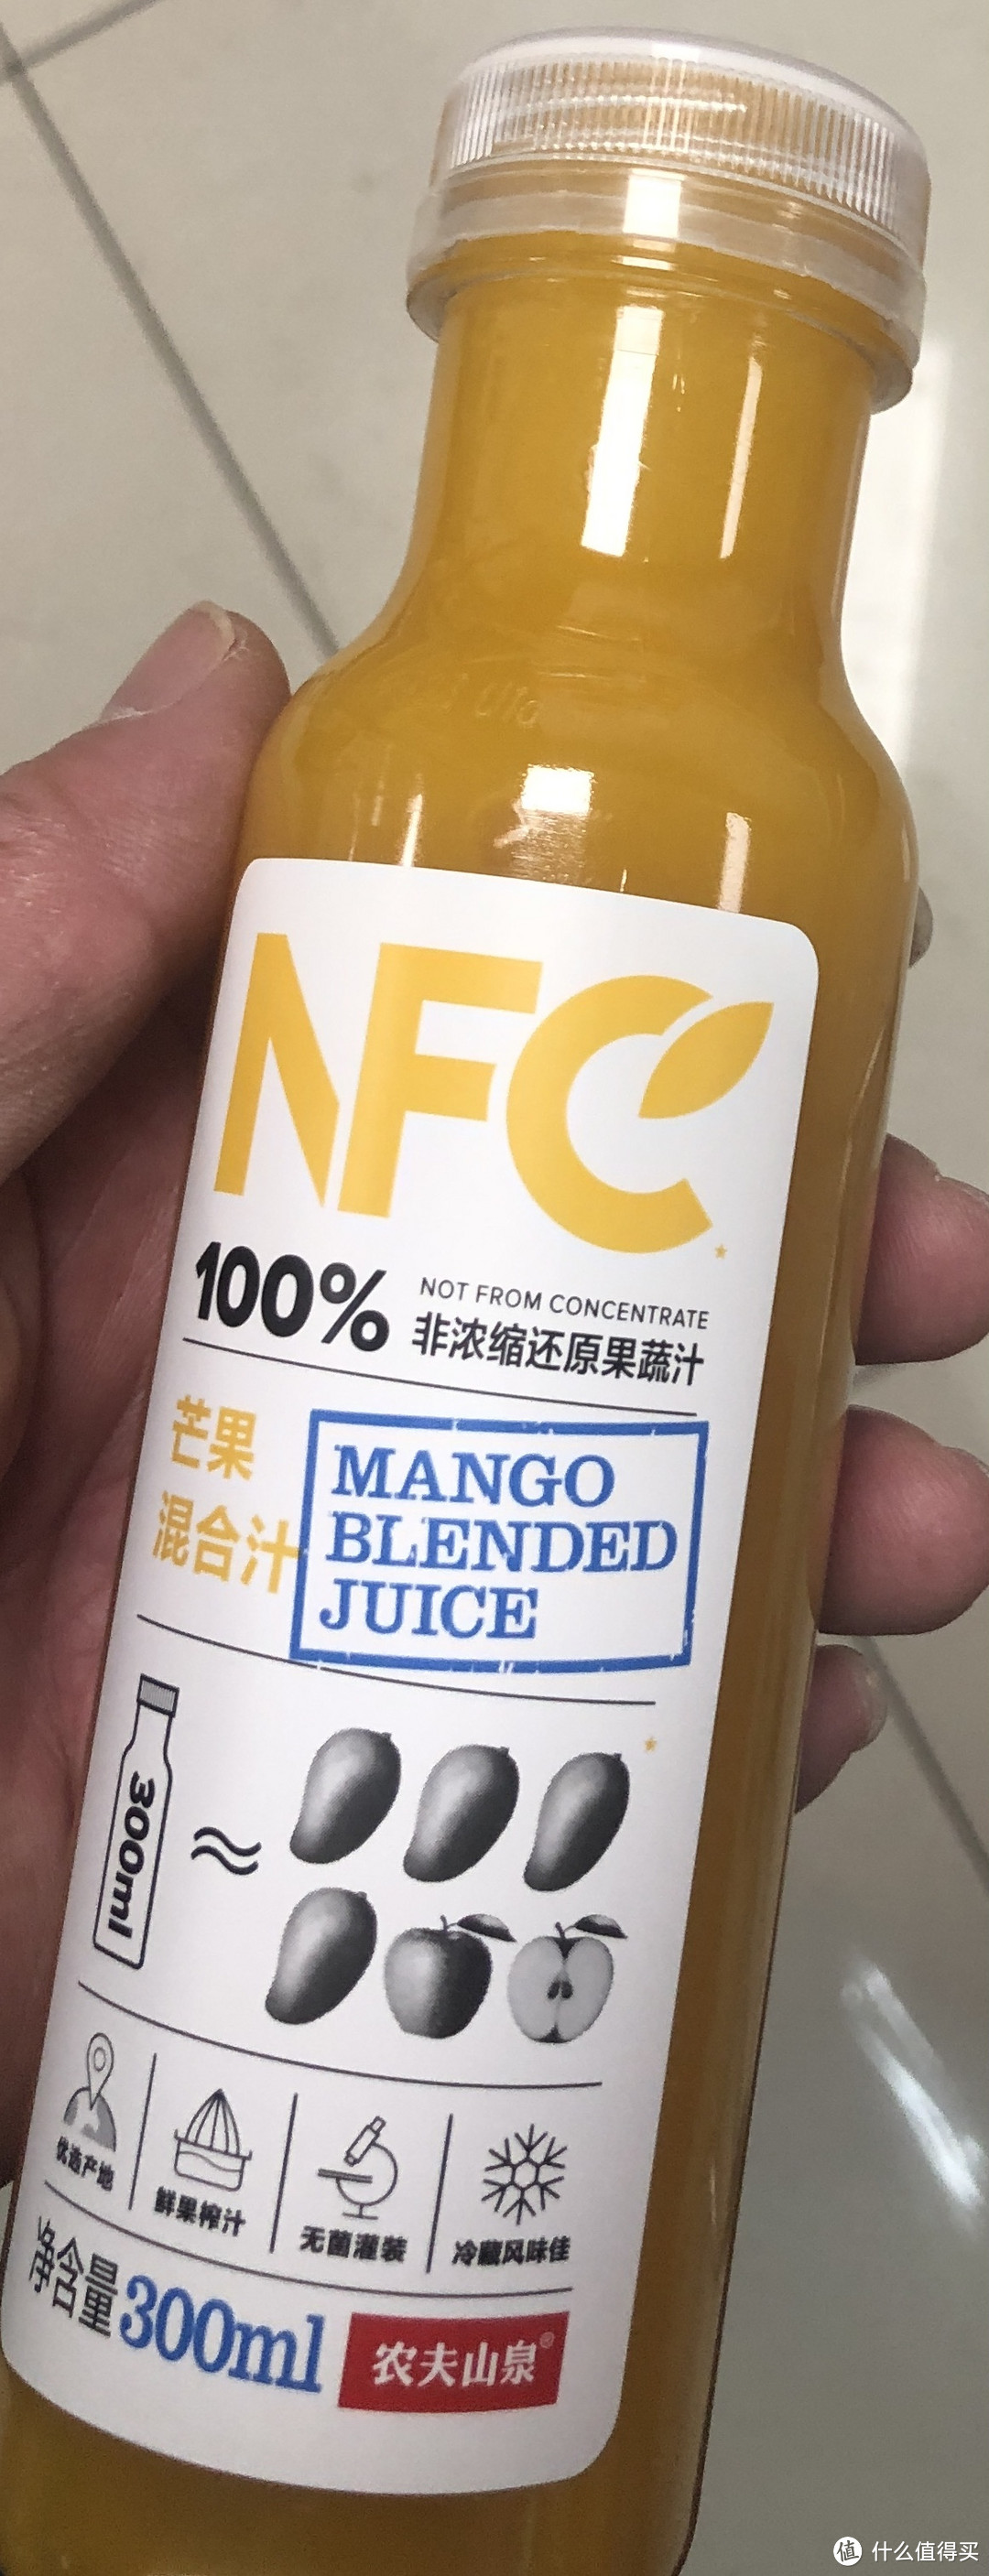 春日宝藏- NFC零度果坊芒果汁